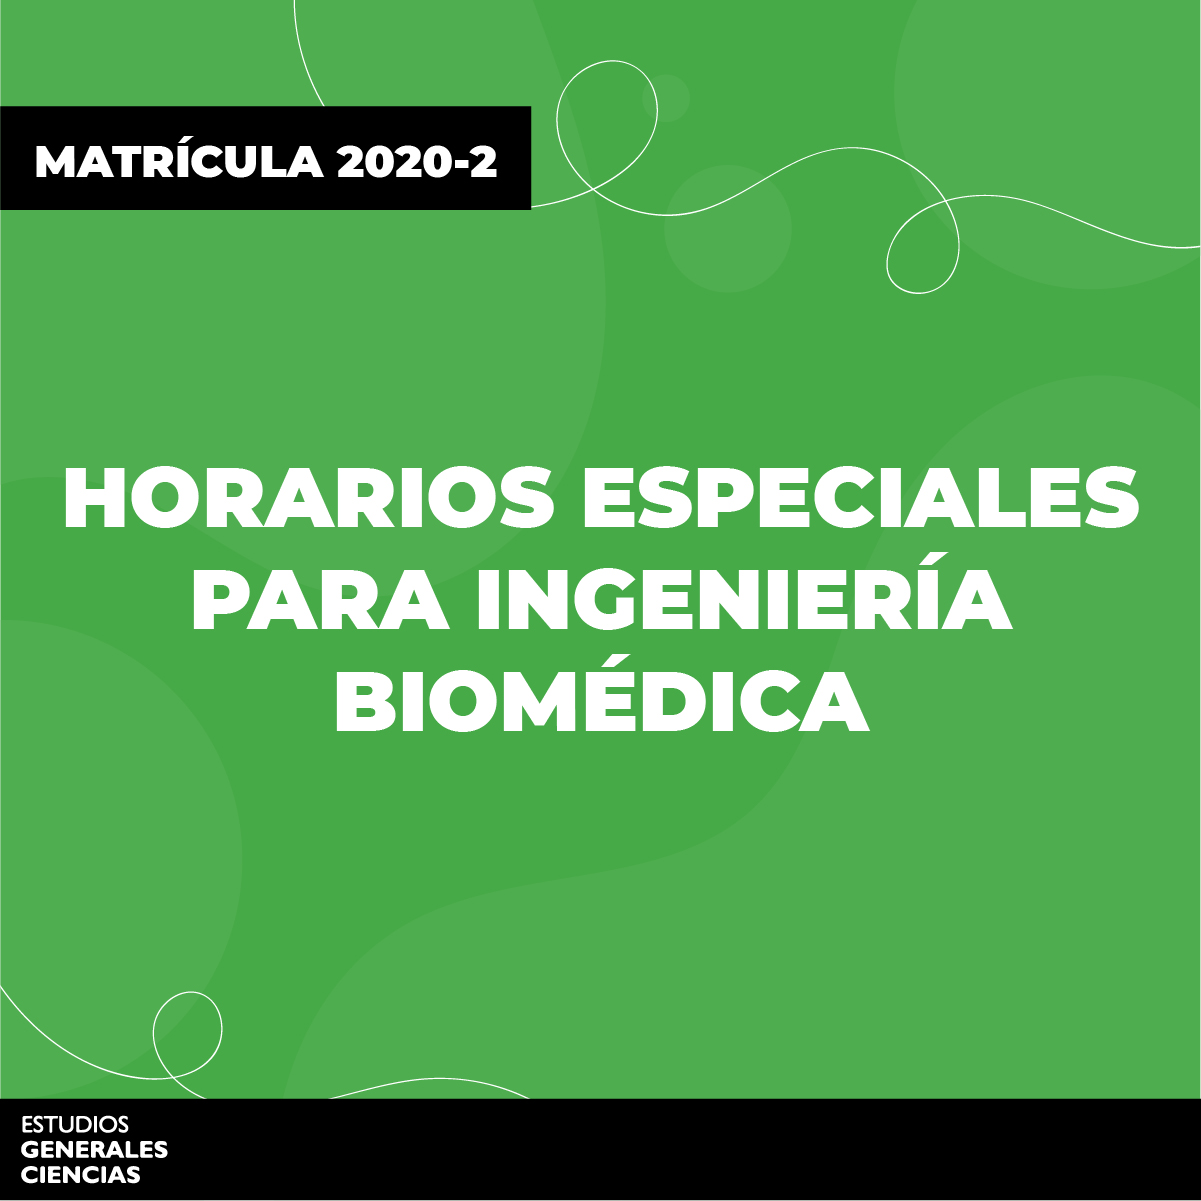 Horarios especiales para ingeniería biomédica - Estudios Generales  CienciasEstudios Generales Ciencias